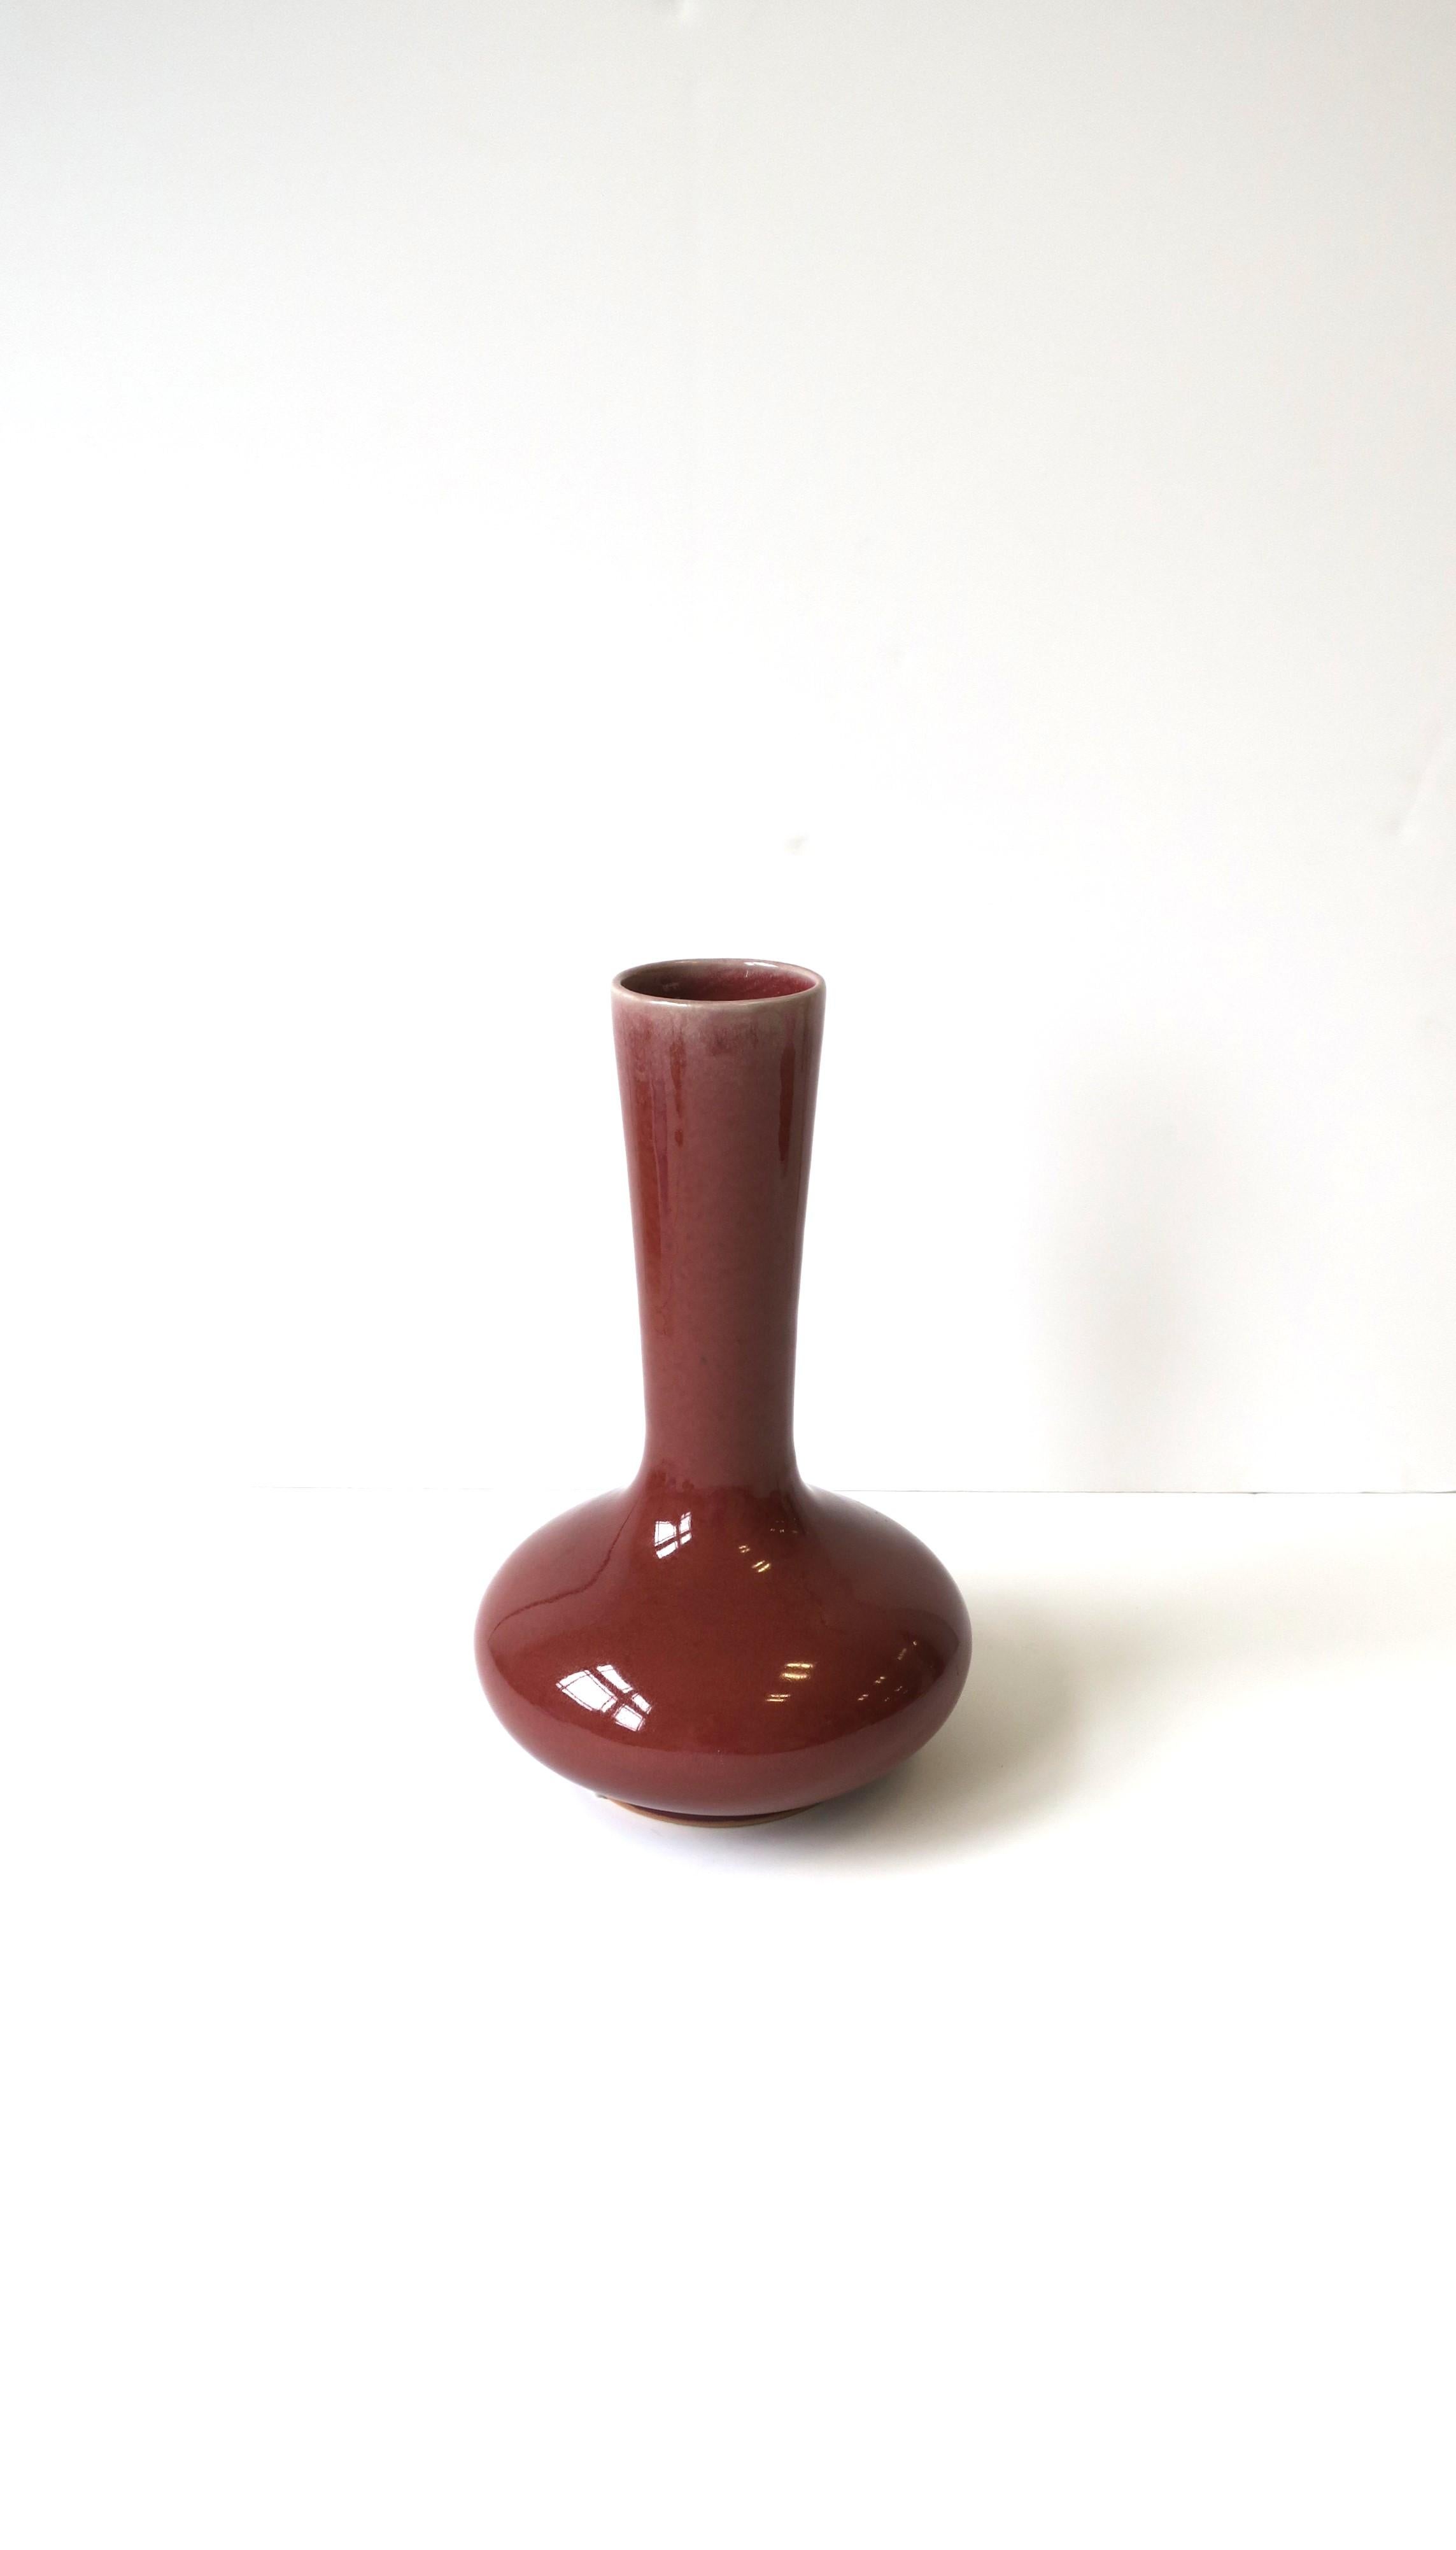 Glazed Red Burgundy Pottery Vase by Maitland-Smith